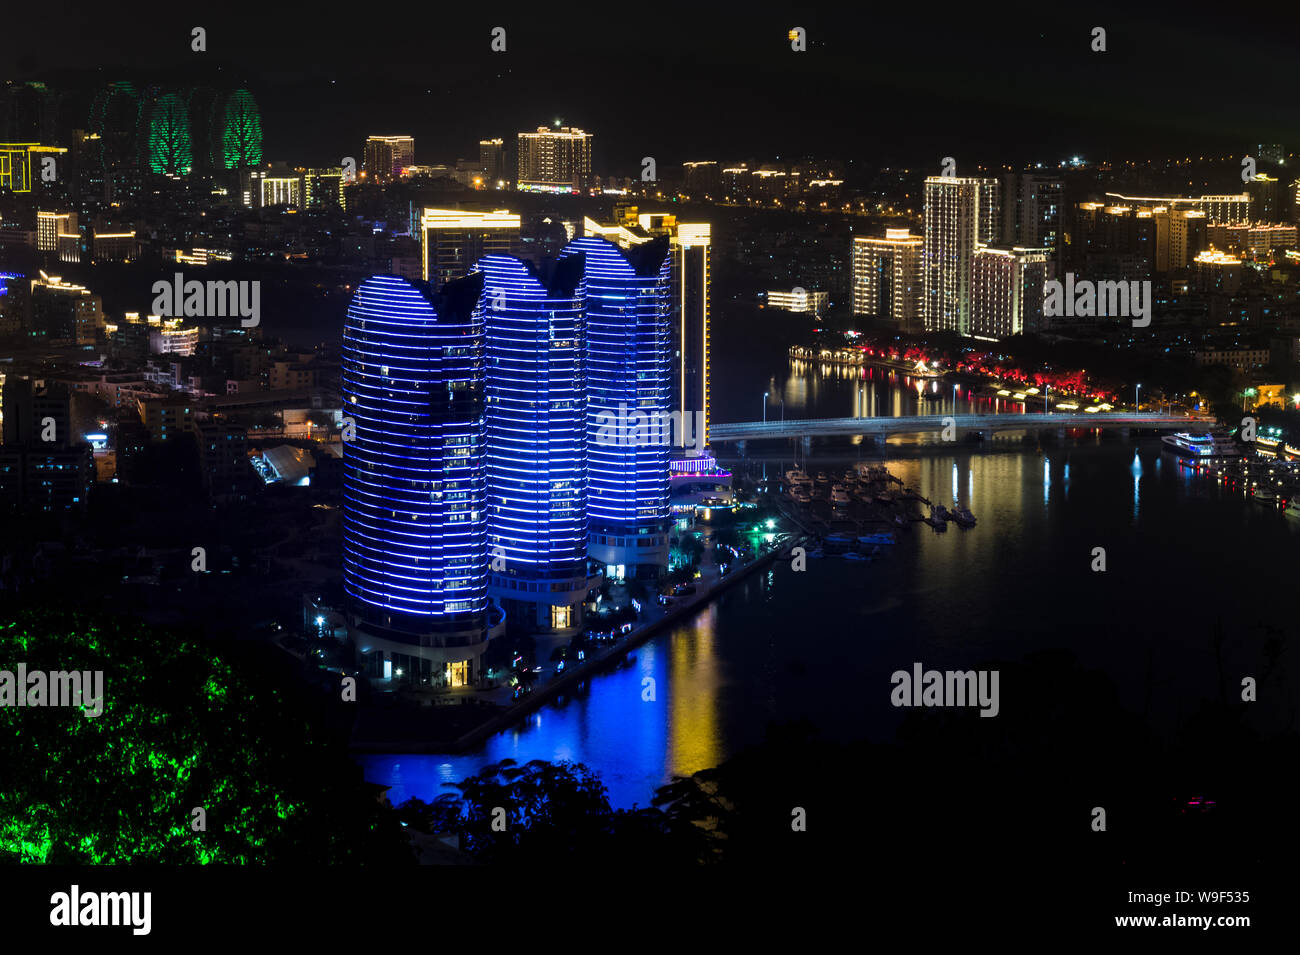 Vista nocturna de la ciudad de Sanya, desde la plataforma de observación. El ciervo gira la cabeza de la isla de Hainan. China Foto de stock